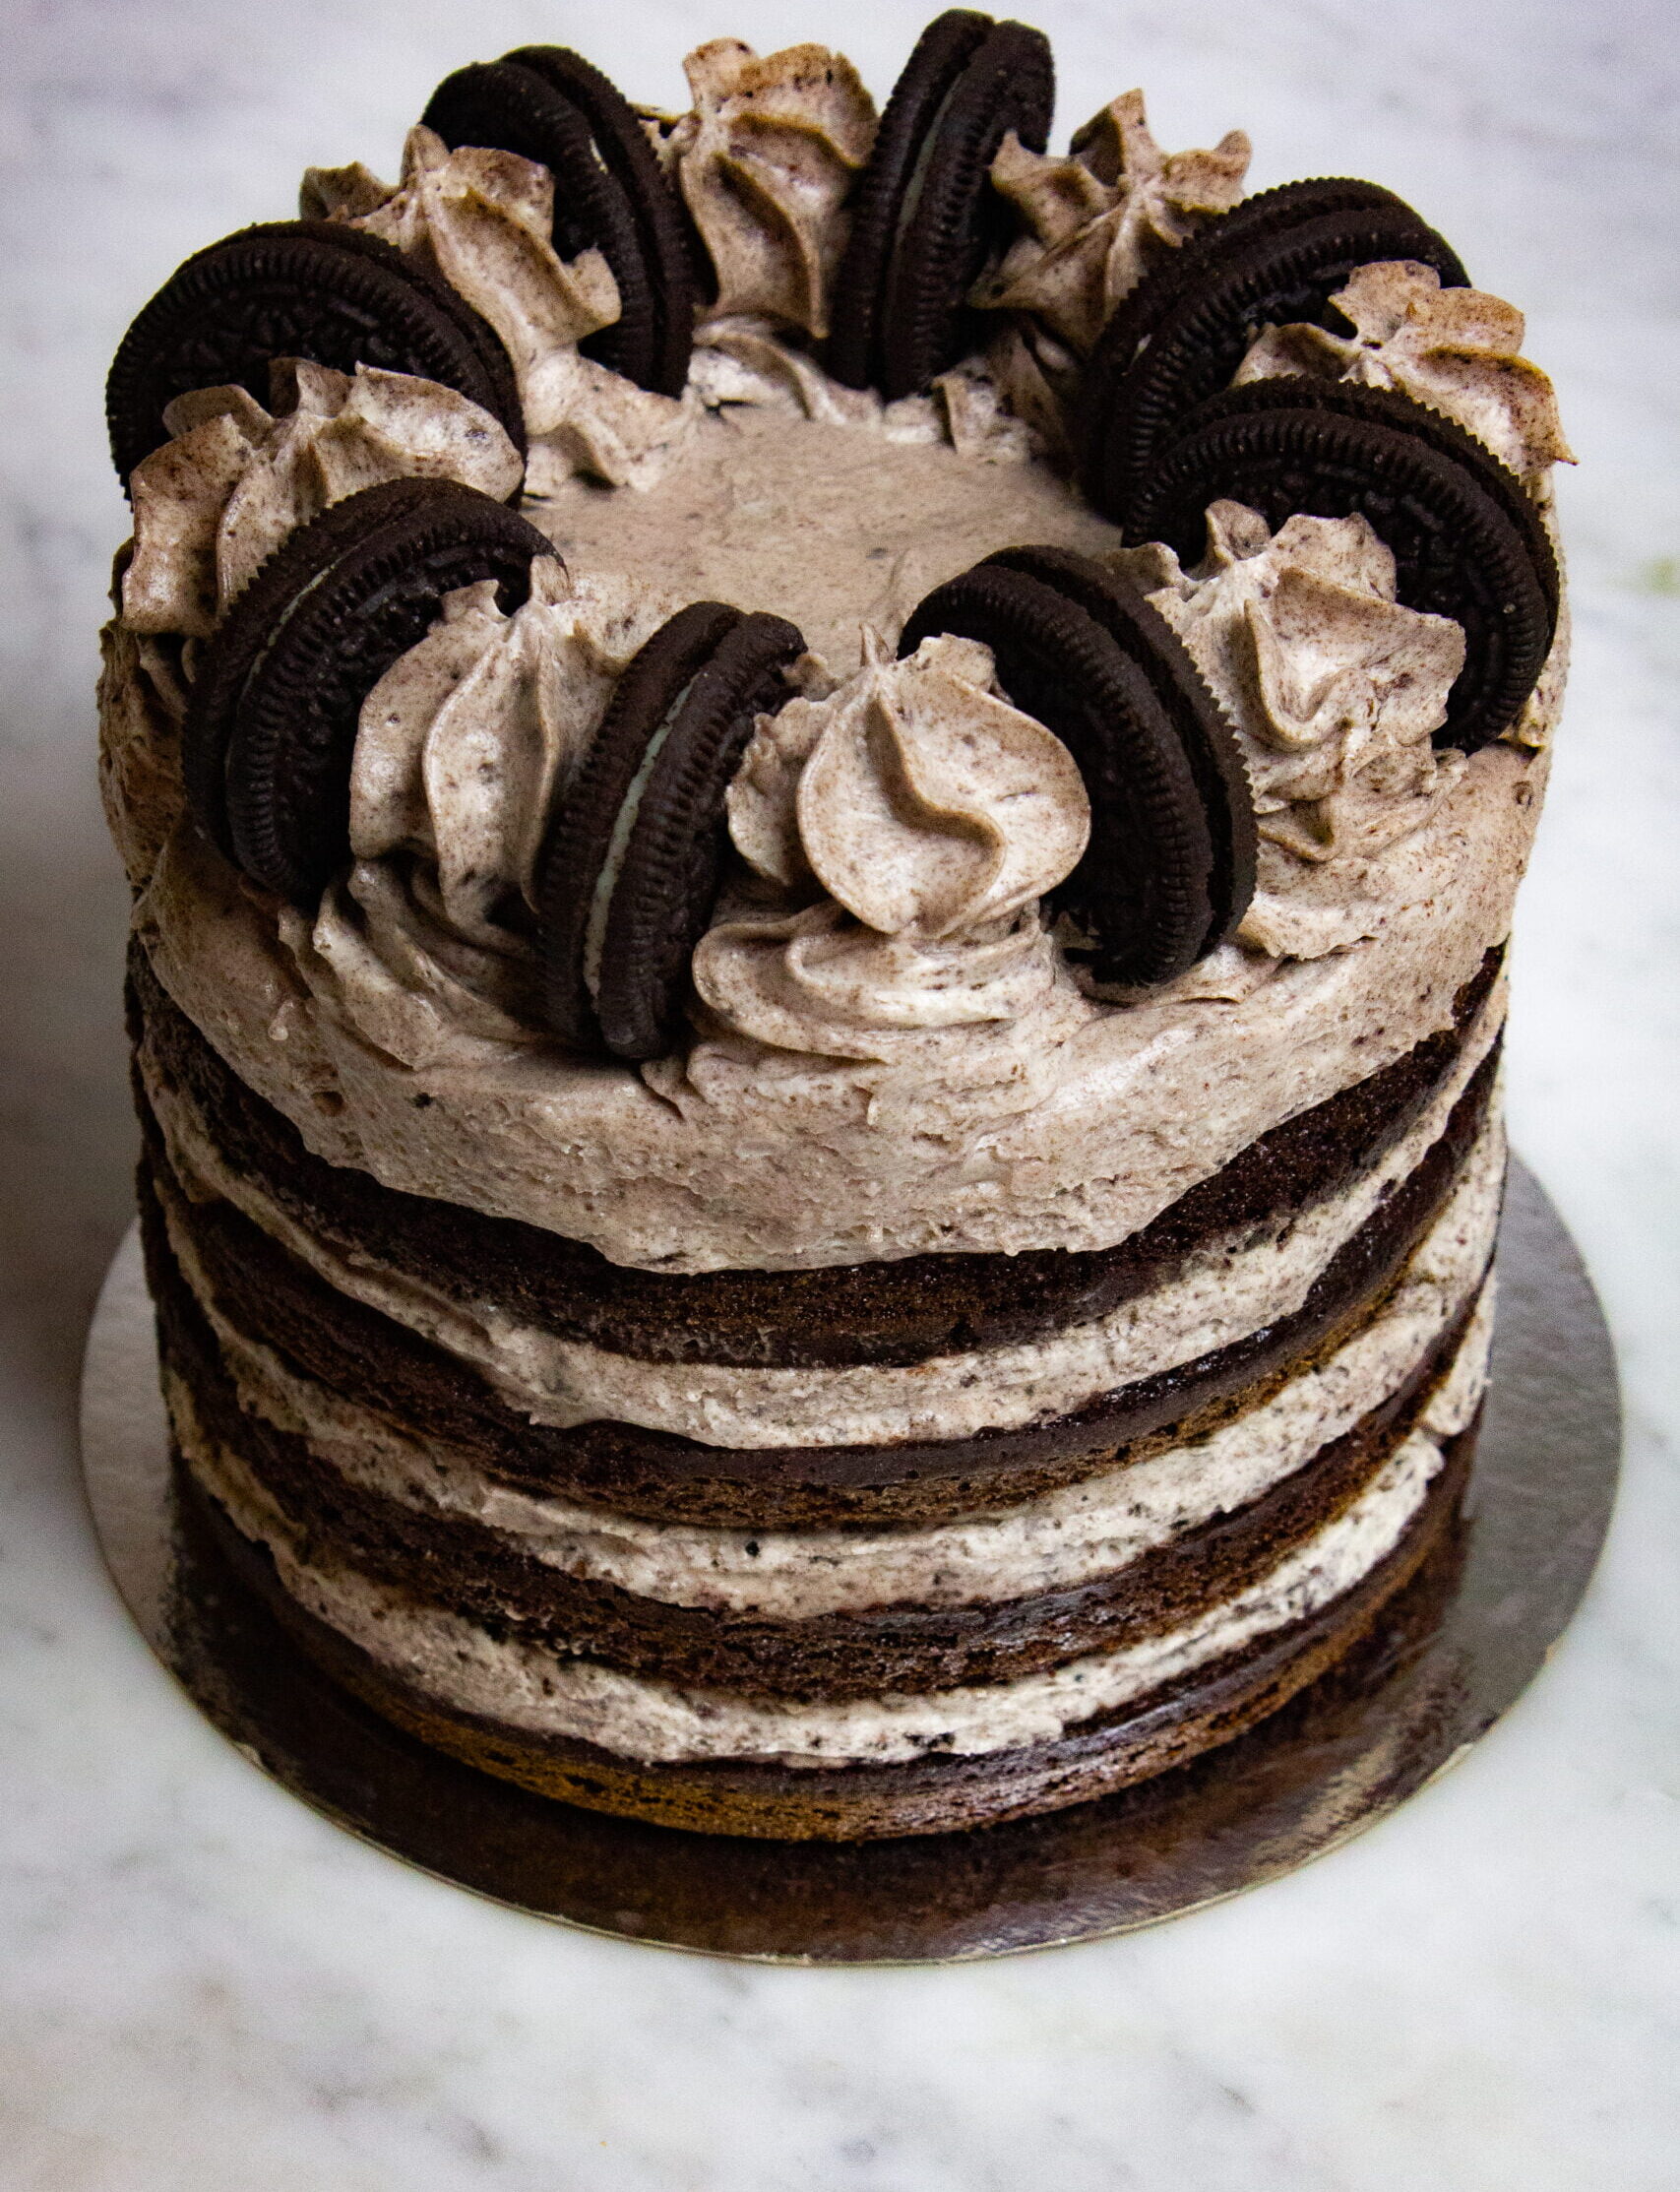 Oreo cheesecake layer cake